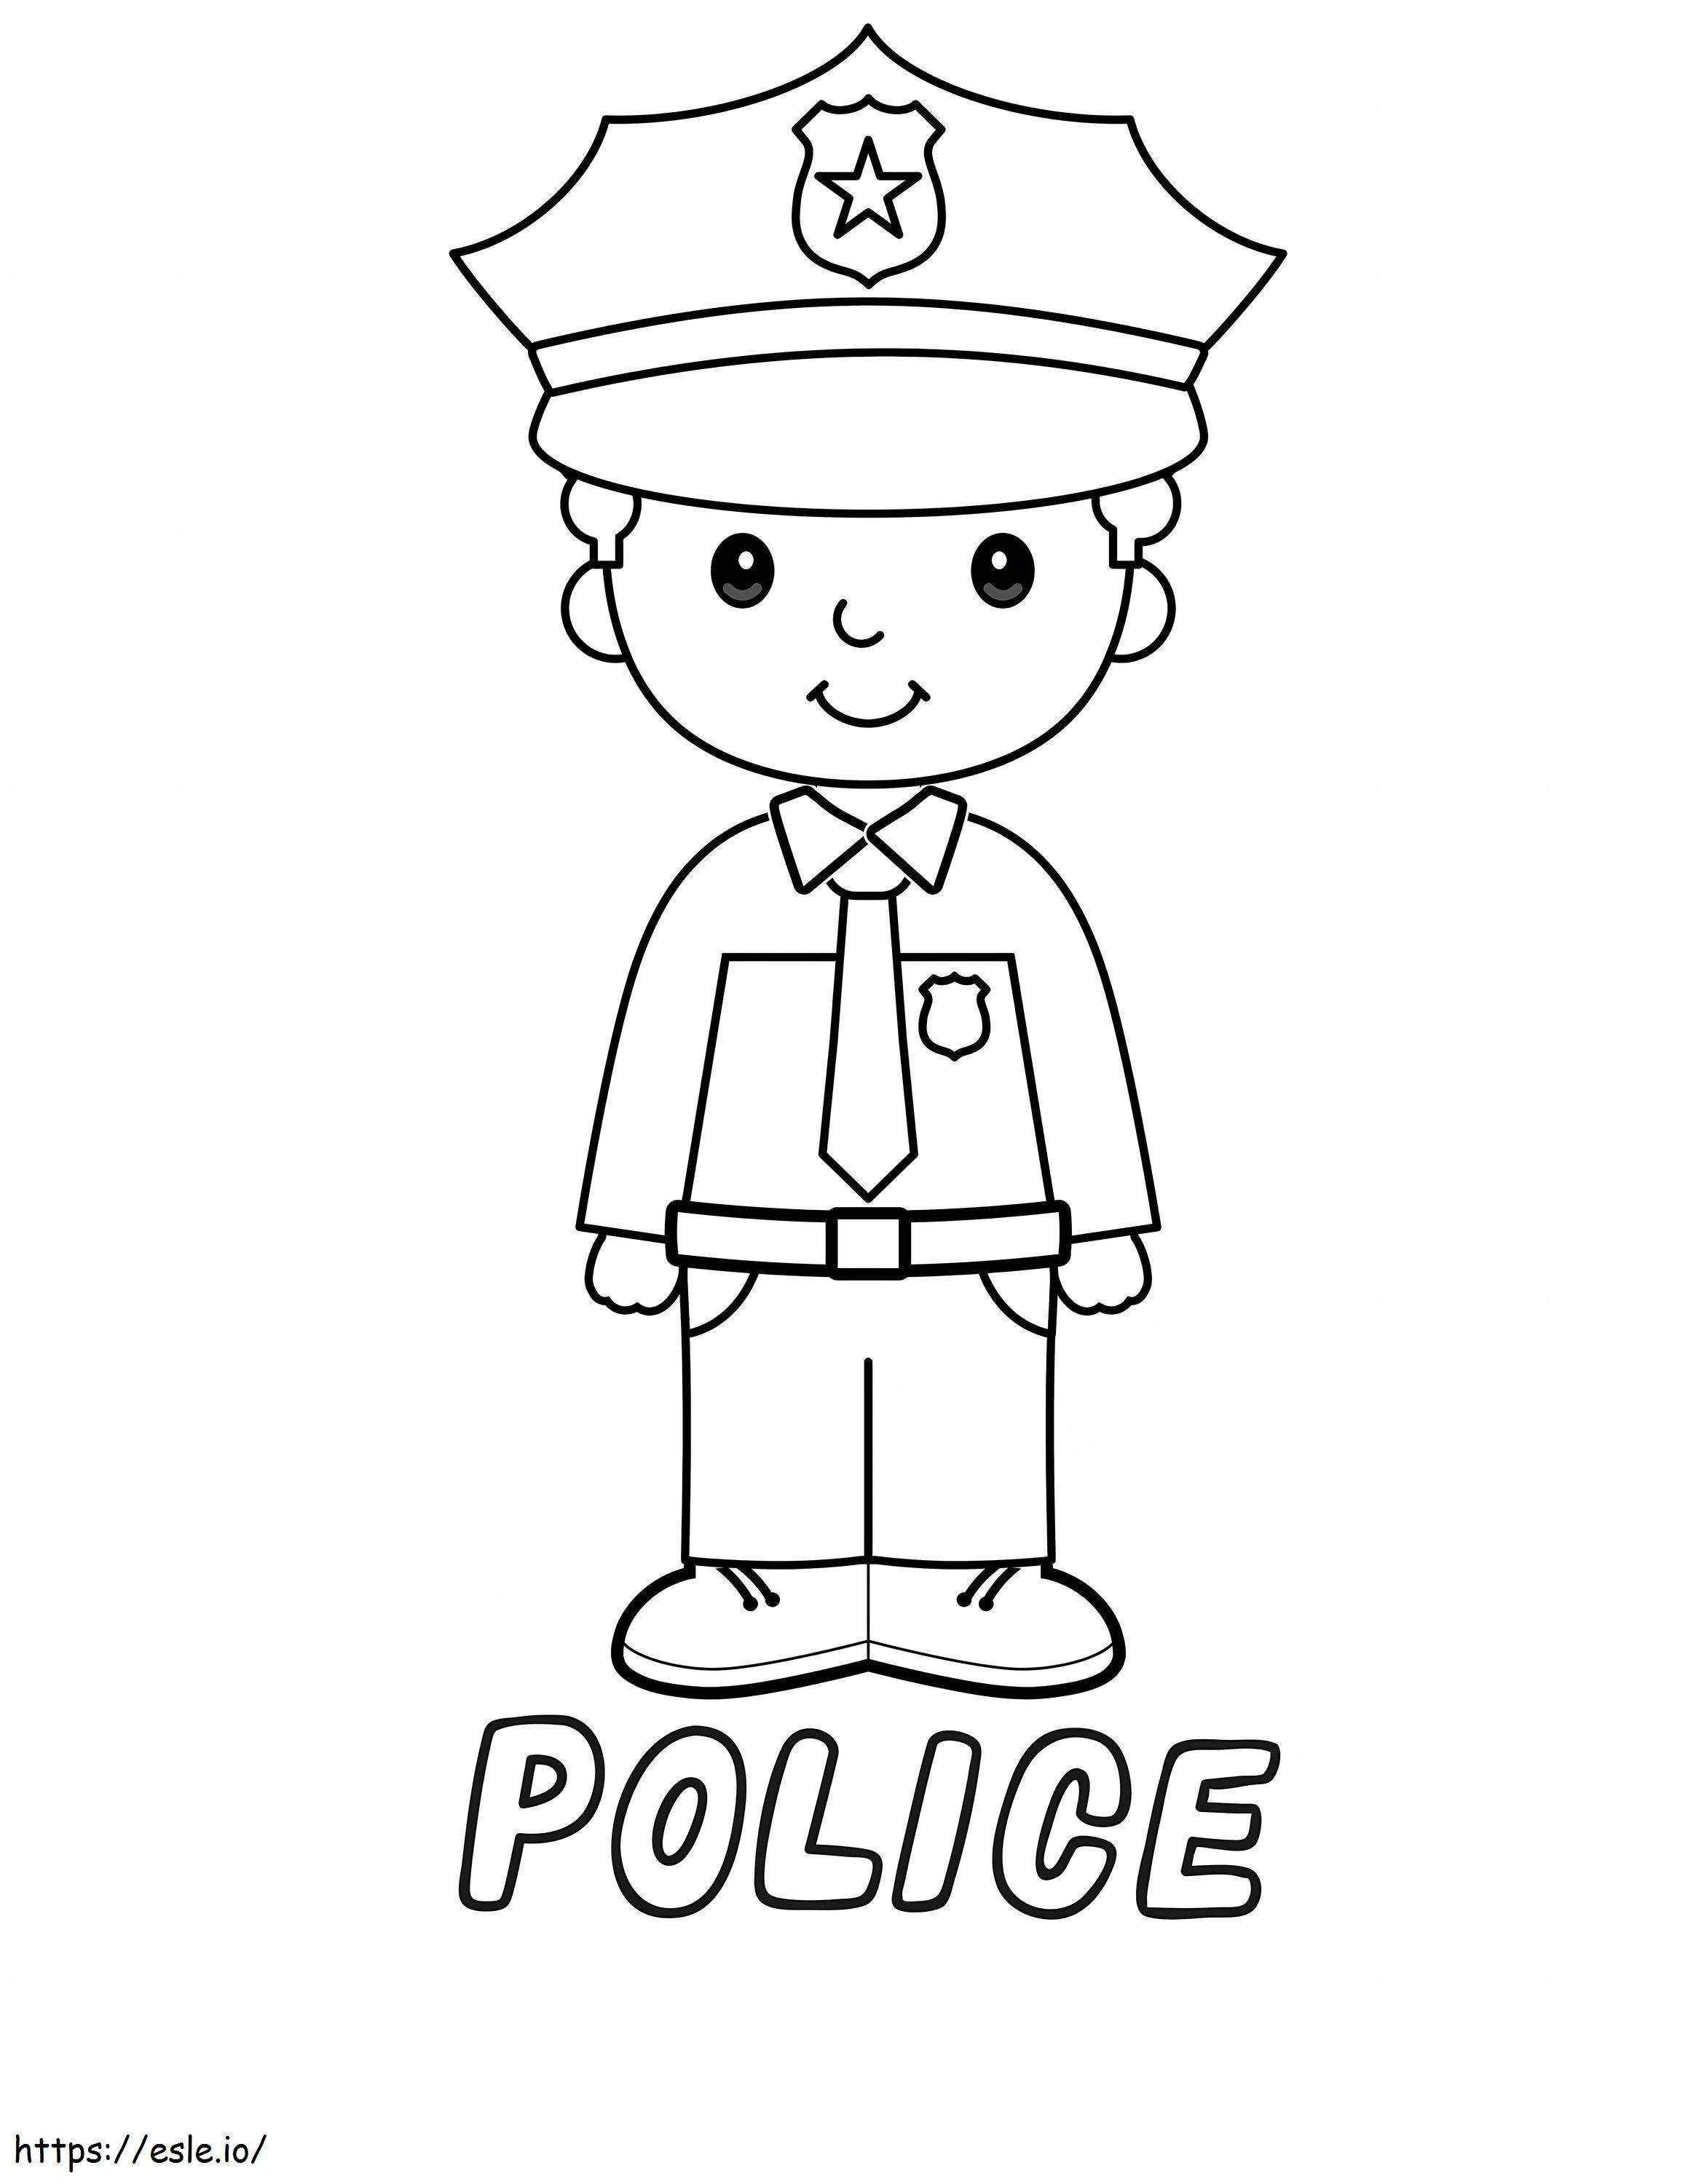 Policial para colorir